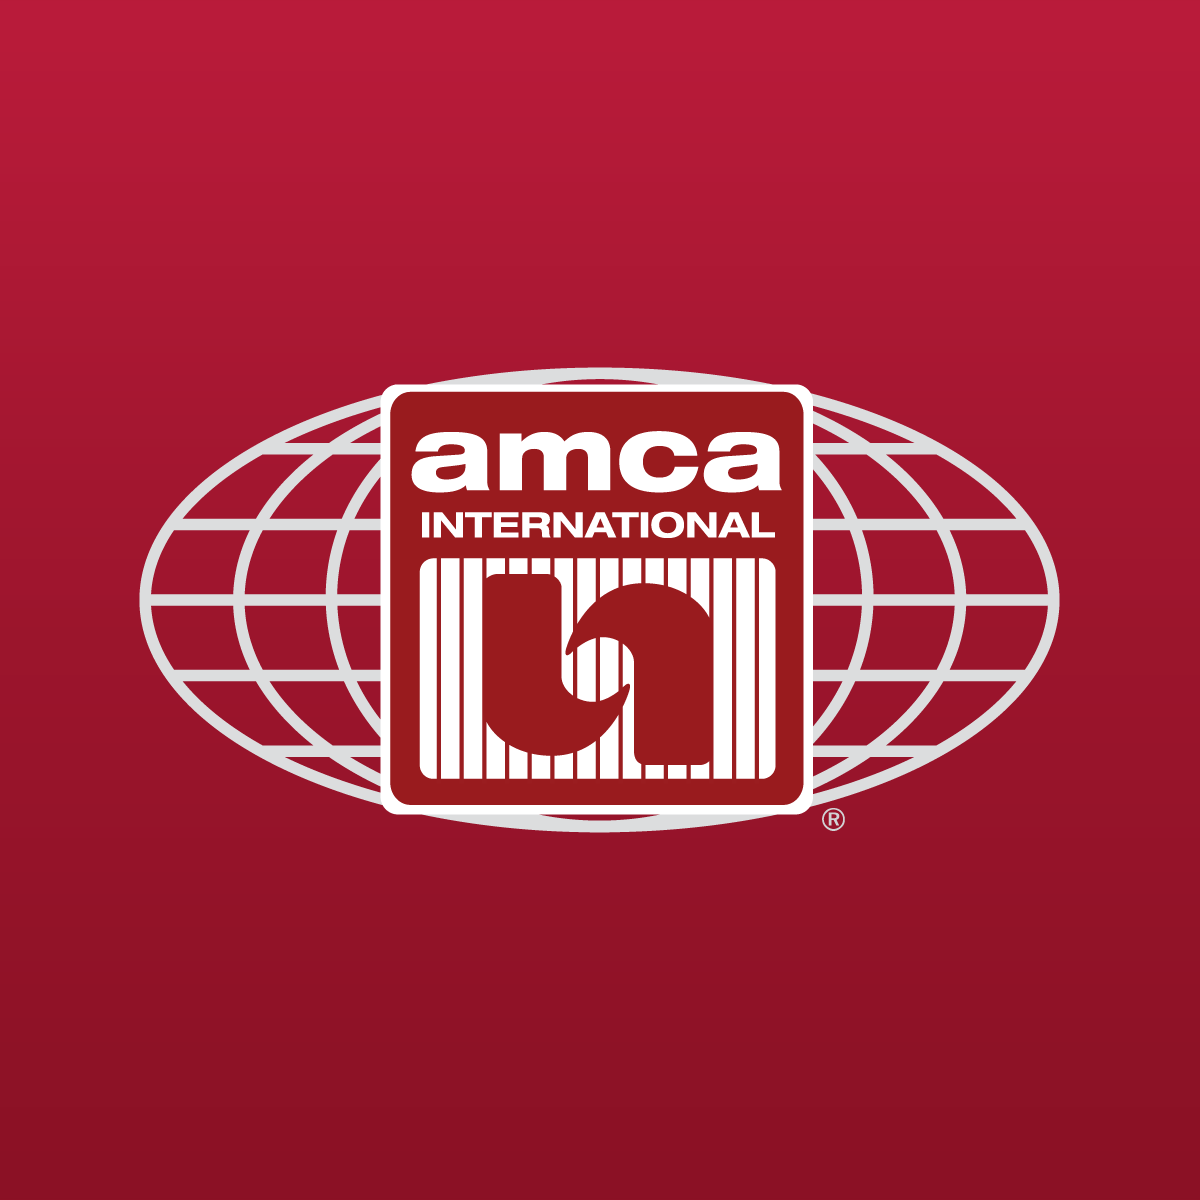 (c) Amca.org